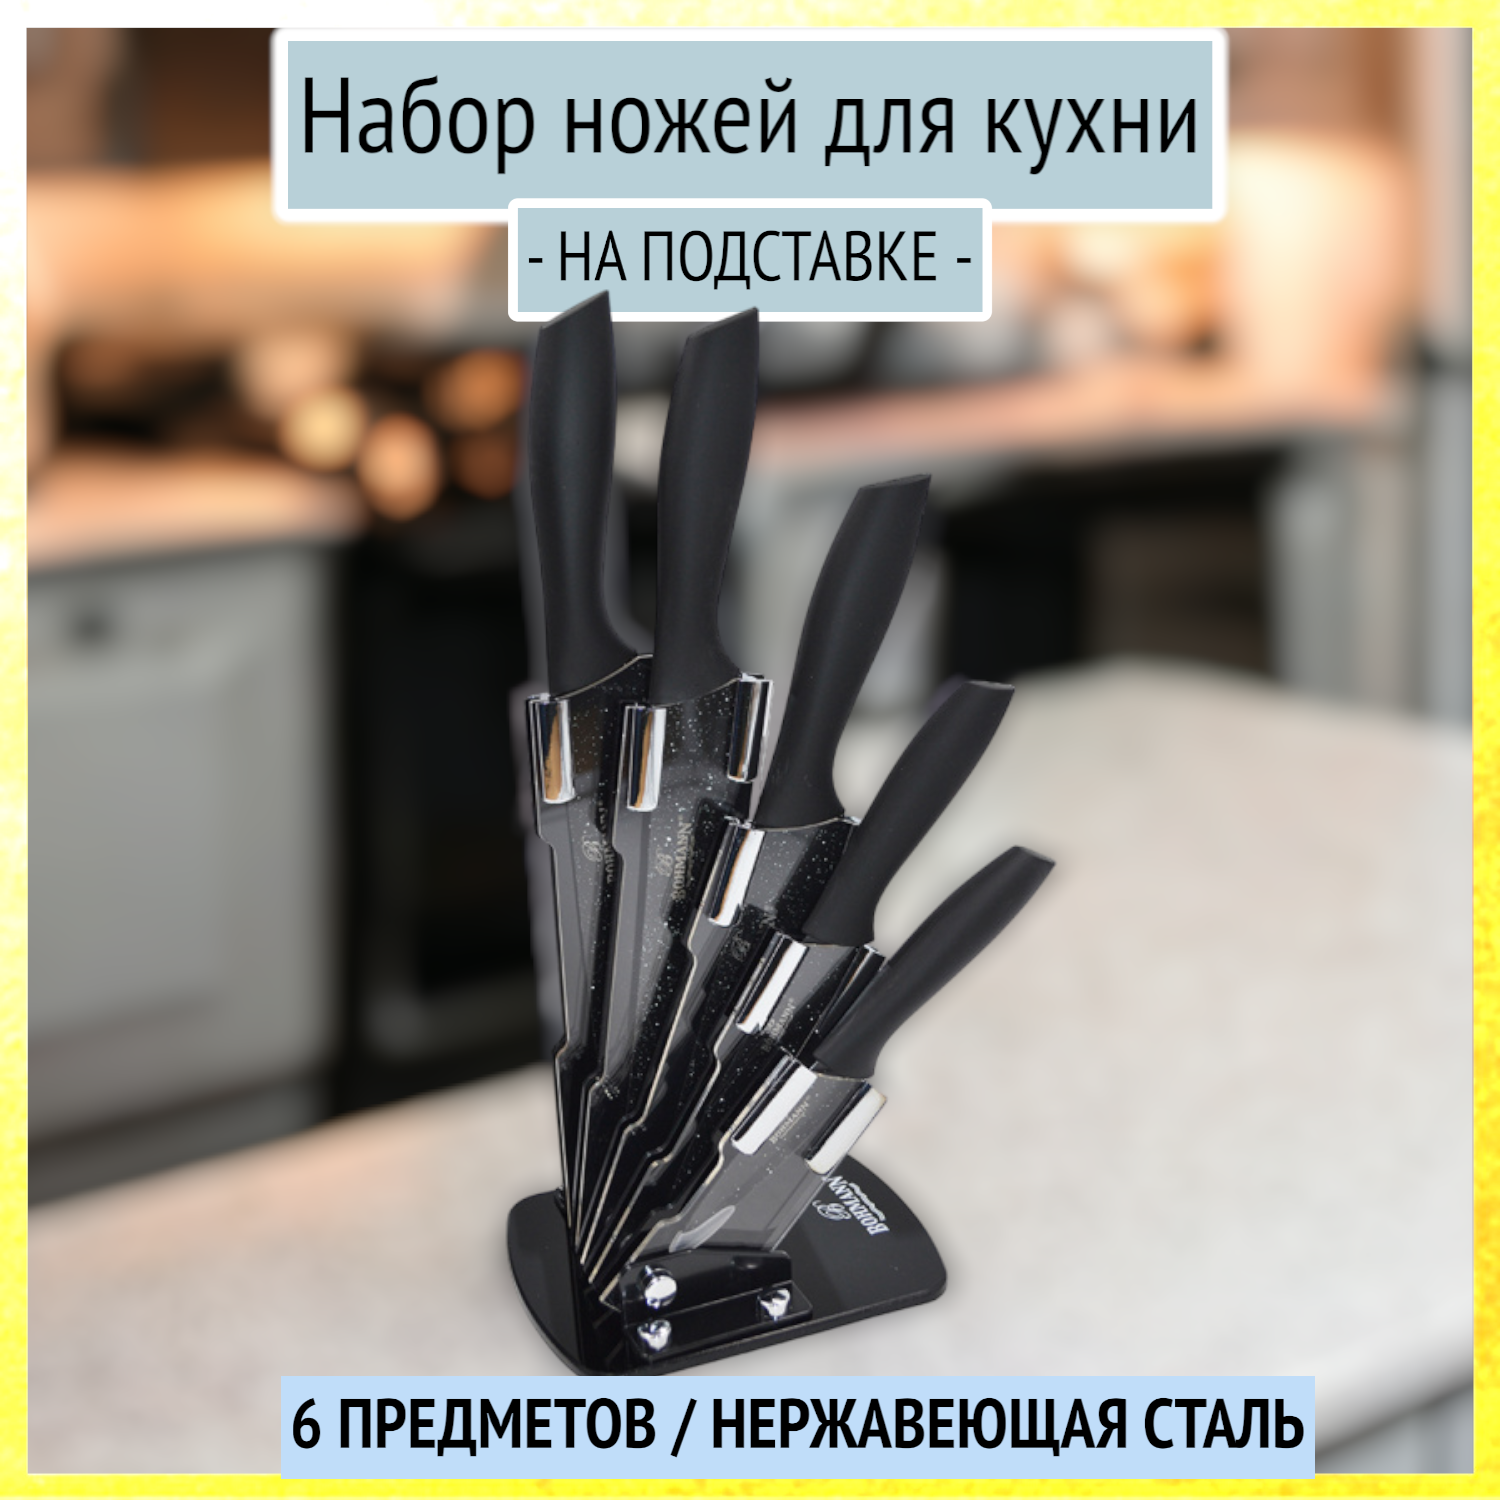 Набор ножей для кухни на подставке Bohmann из 6 предметов, BH-5254